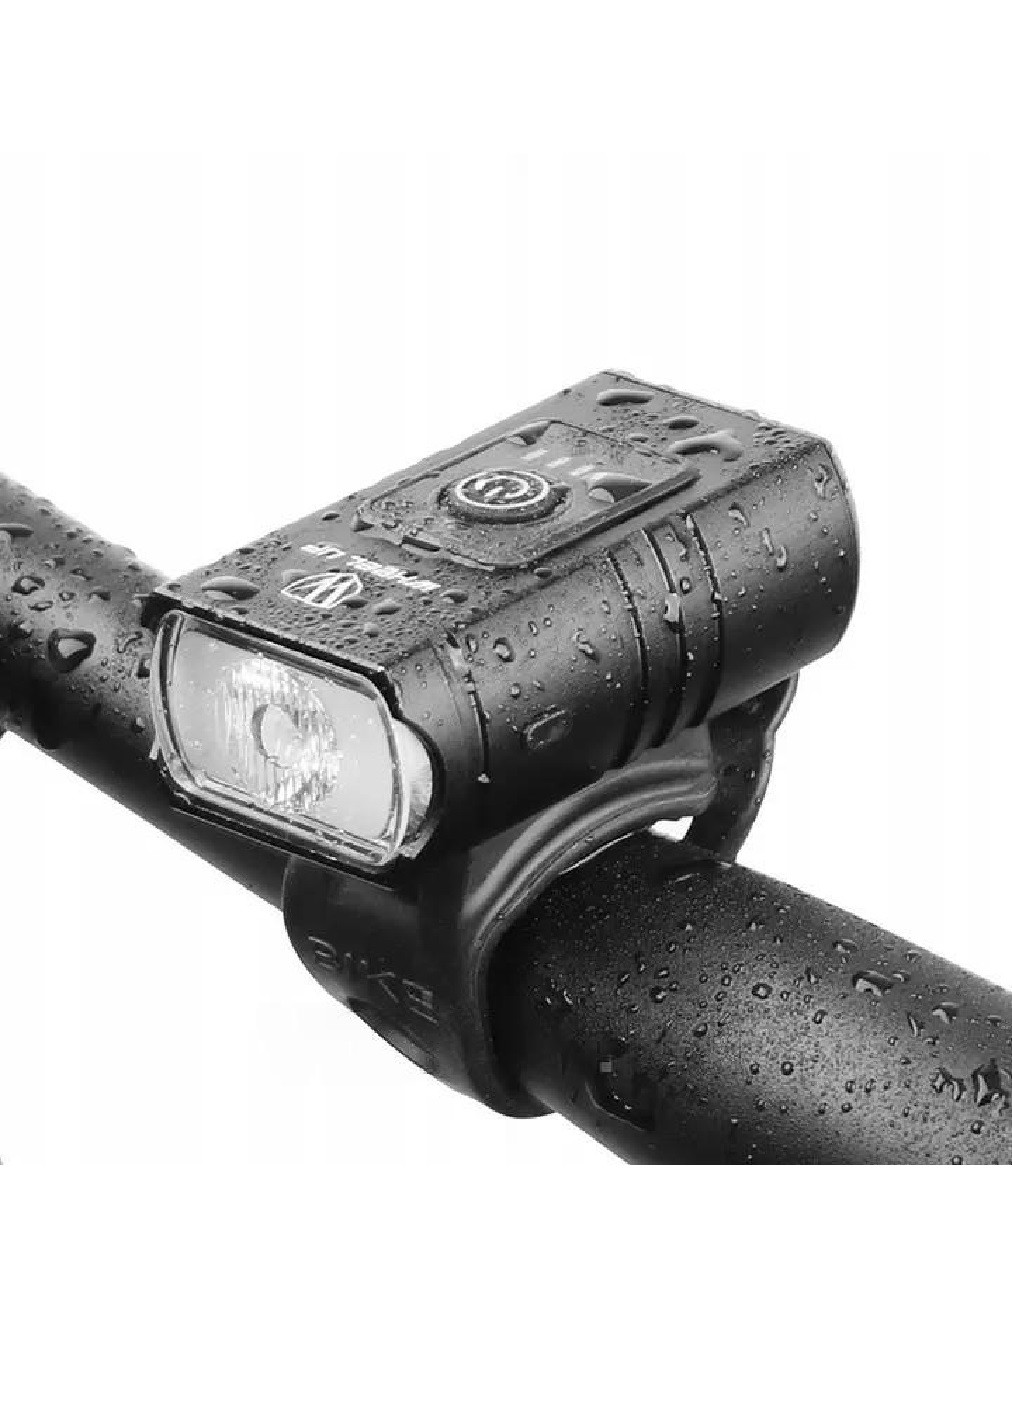 Ліхтарик велосипедний на кермо з індикатором заряду батареї малий 2 діоди алюмінієвий сплав 65х33х24 мм (476258-Prob) Unbranded (278014571)